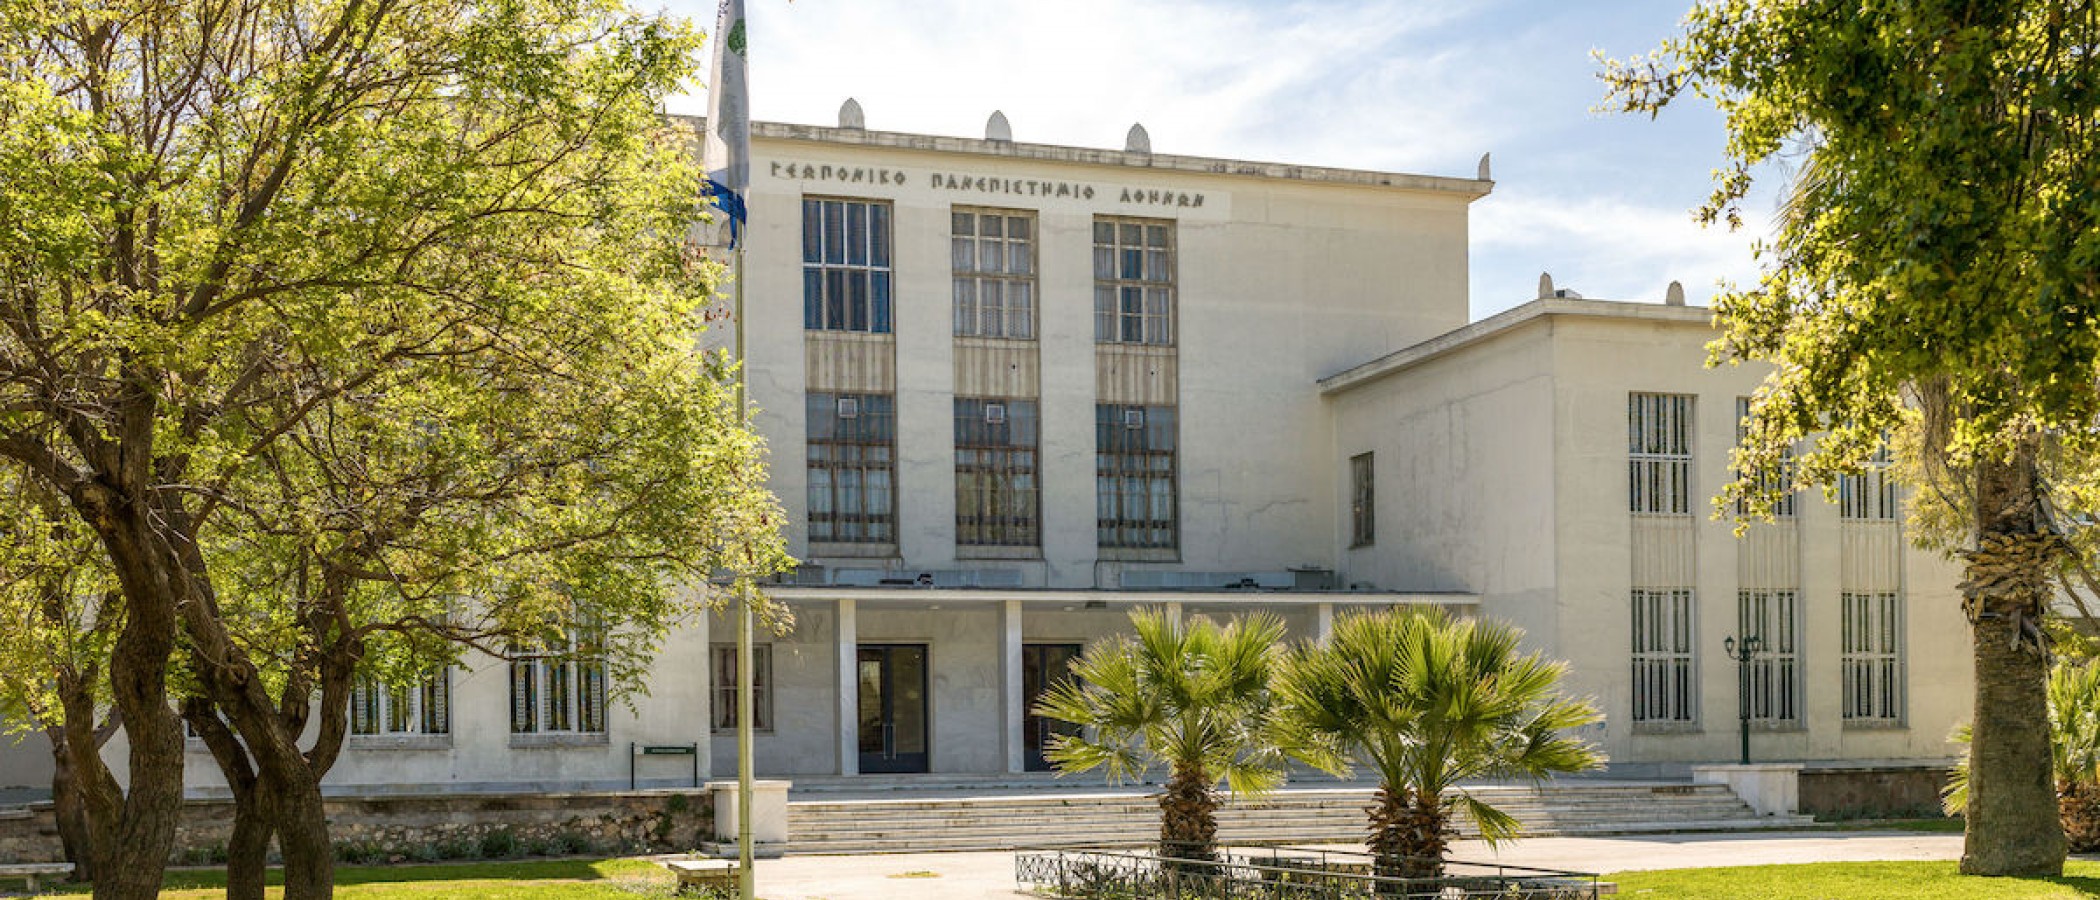  Είκοσι τέσσερα μέλη του Γεωπονικού Πανεπιστημίου Αθηνών στη λίστα κορυφαίων επιστημόνων σε παγκόσμιο επίπεδο